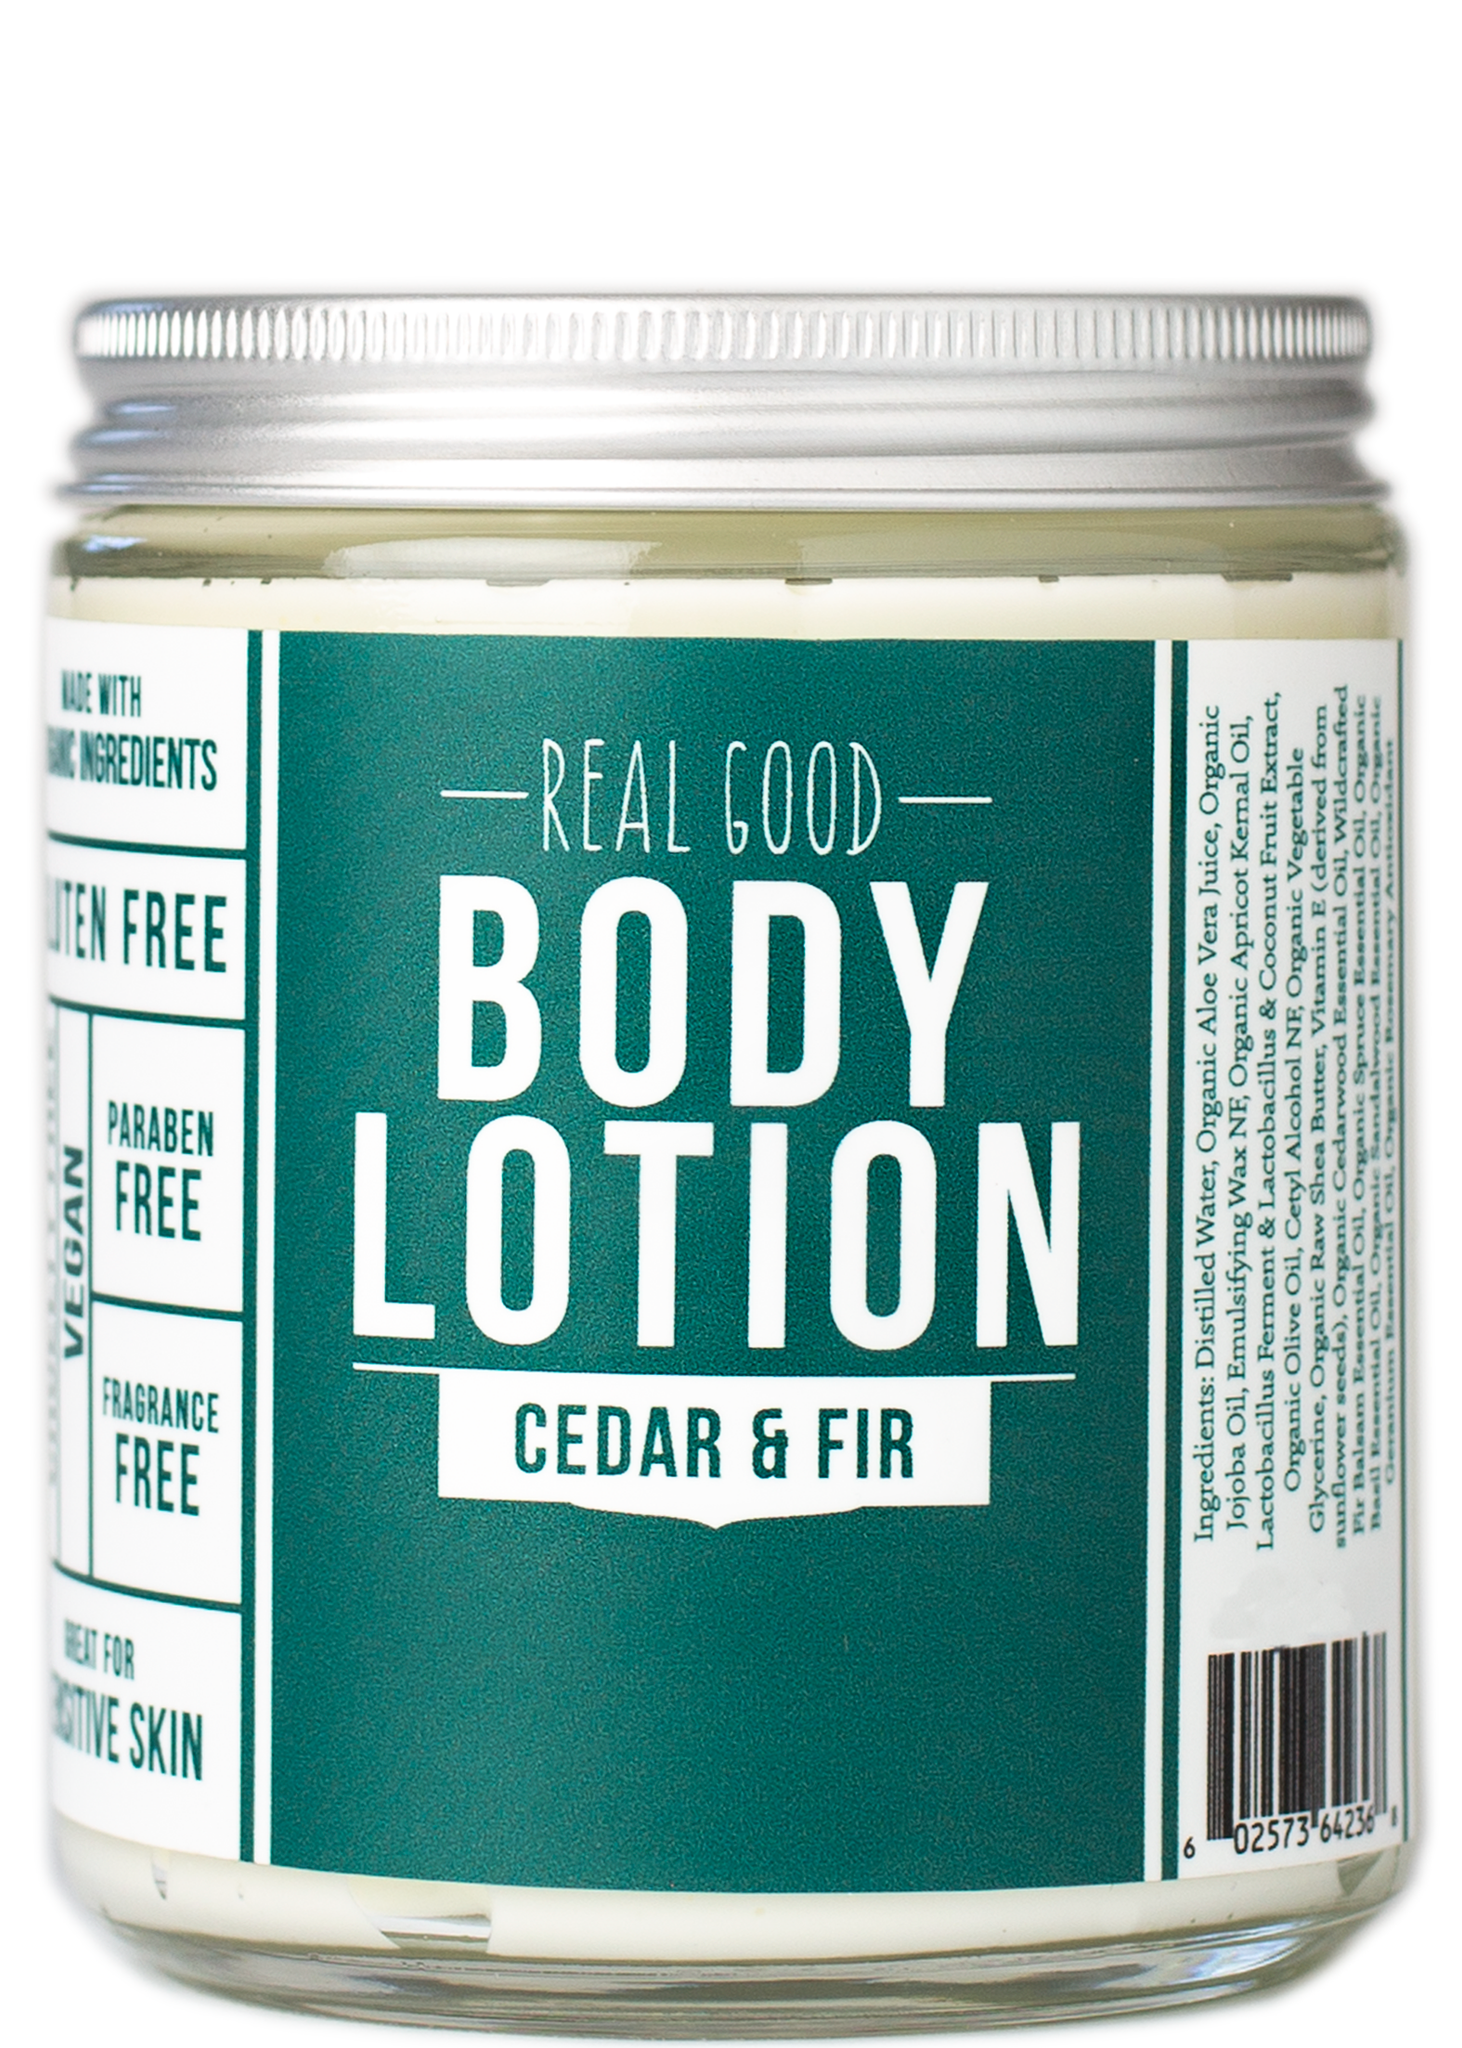 Real Good Body Lotion / Cedar & Fir  {new packaging!}